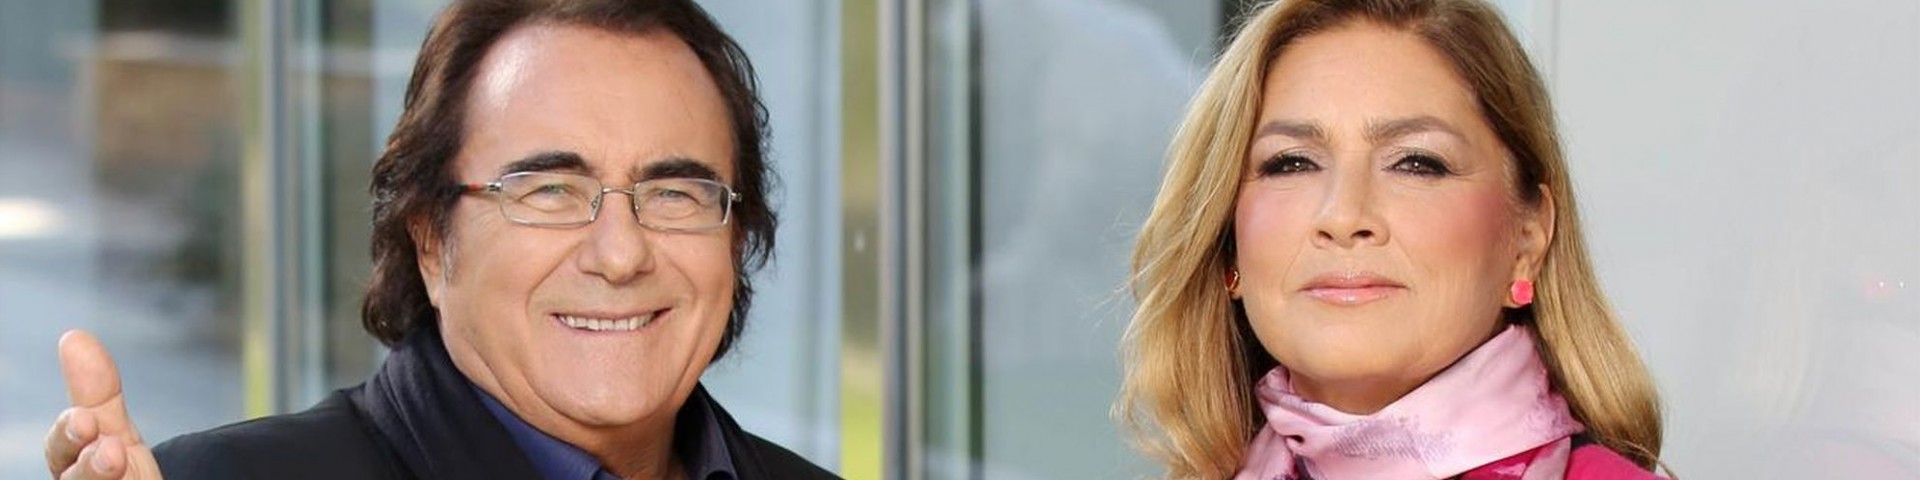 Al Bano e Romina a Sanremo 2020: arriva la conferma ufficiale